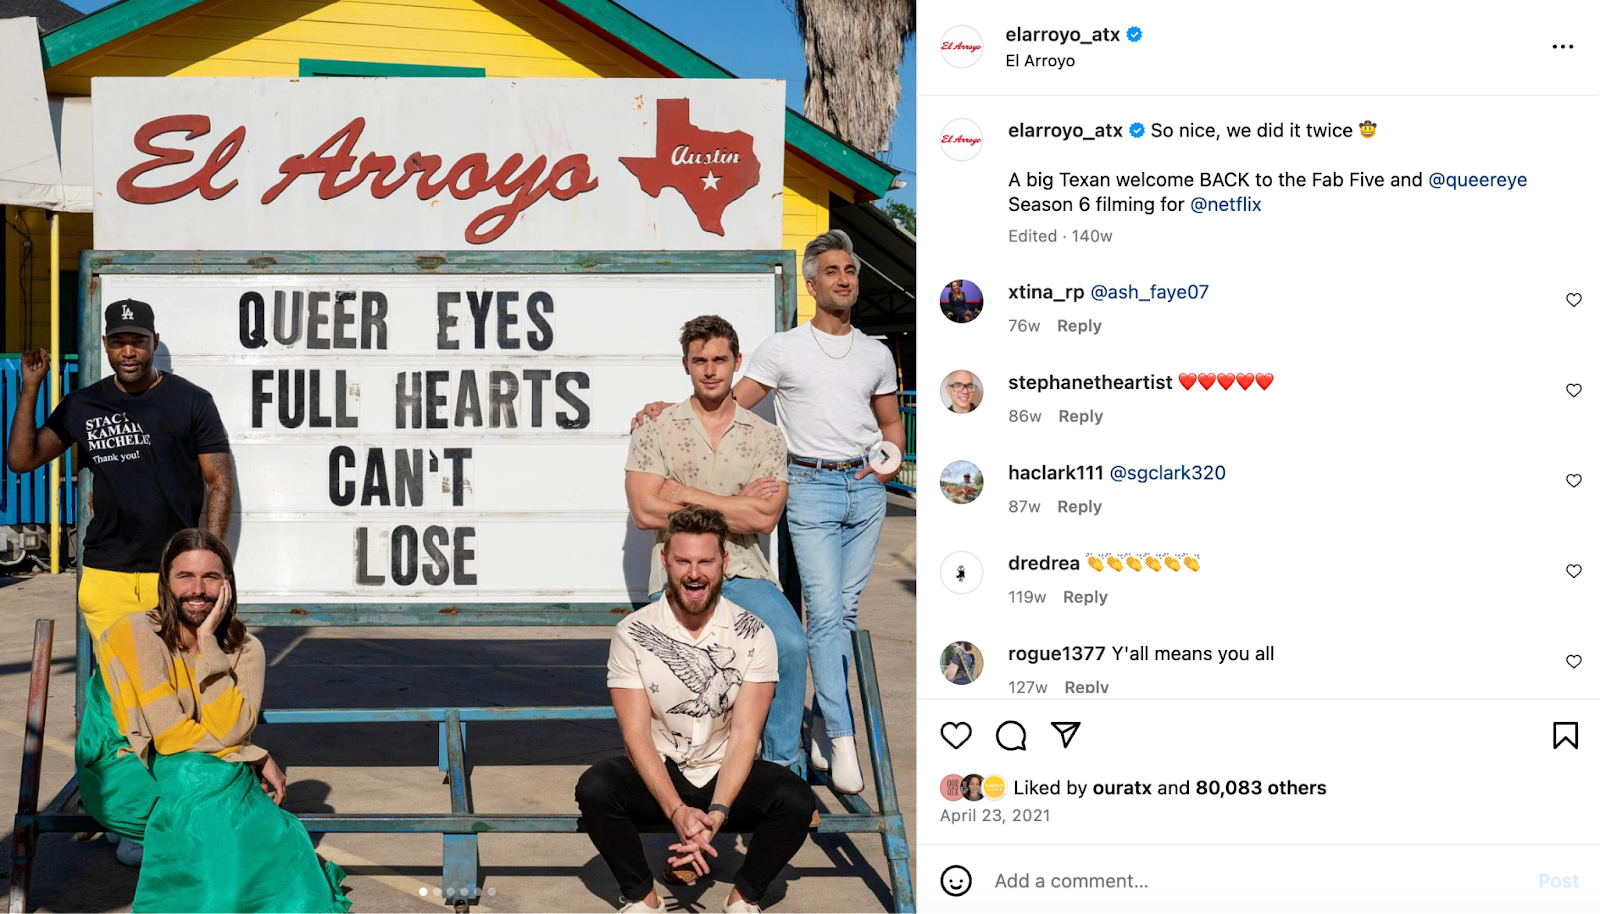 تخلیقی ریستوراں کی مارکیٹنگ کے خیالات: Queer Eye کی کاسٹ شو کو فروغ دینے کے لیے El Arroyo کے مارکی نشان کے سامنے پوز دیتی ہے۔